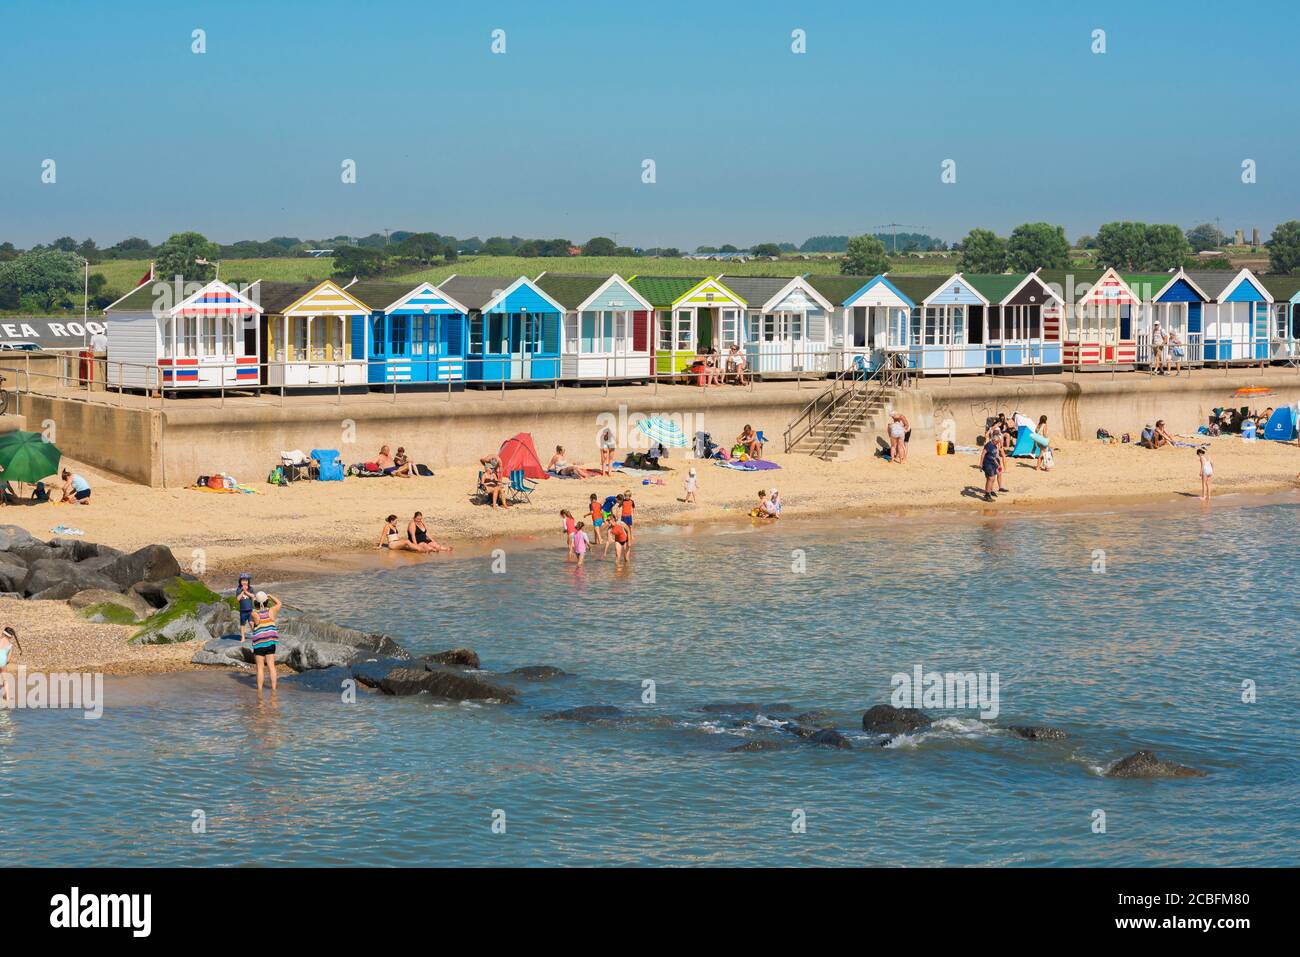 Suffolk en bord de mer, vue en été des gens qui apprécient une journée sur la plage North Parade à Southwold, Suffolk, East Anglia, Angleterre, Royaume-Uni. Banque D'Images